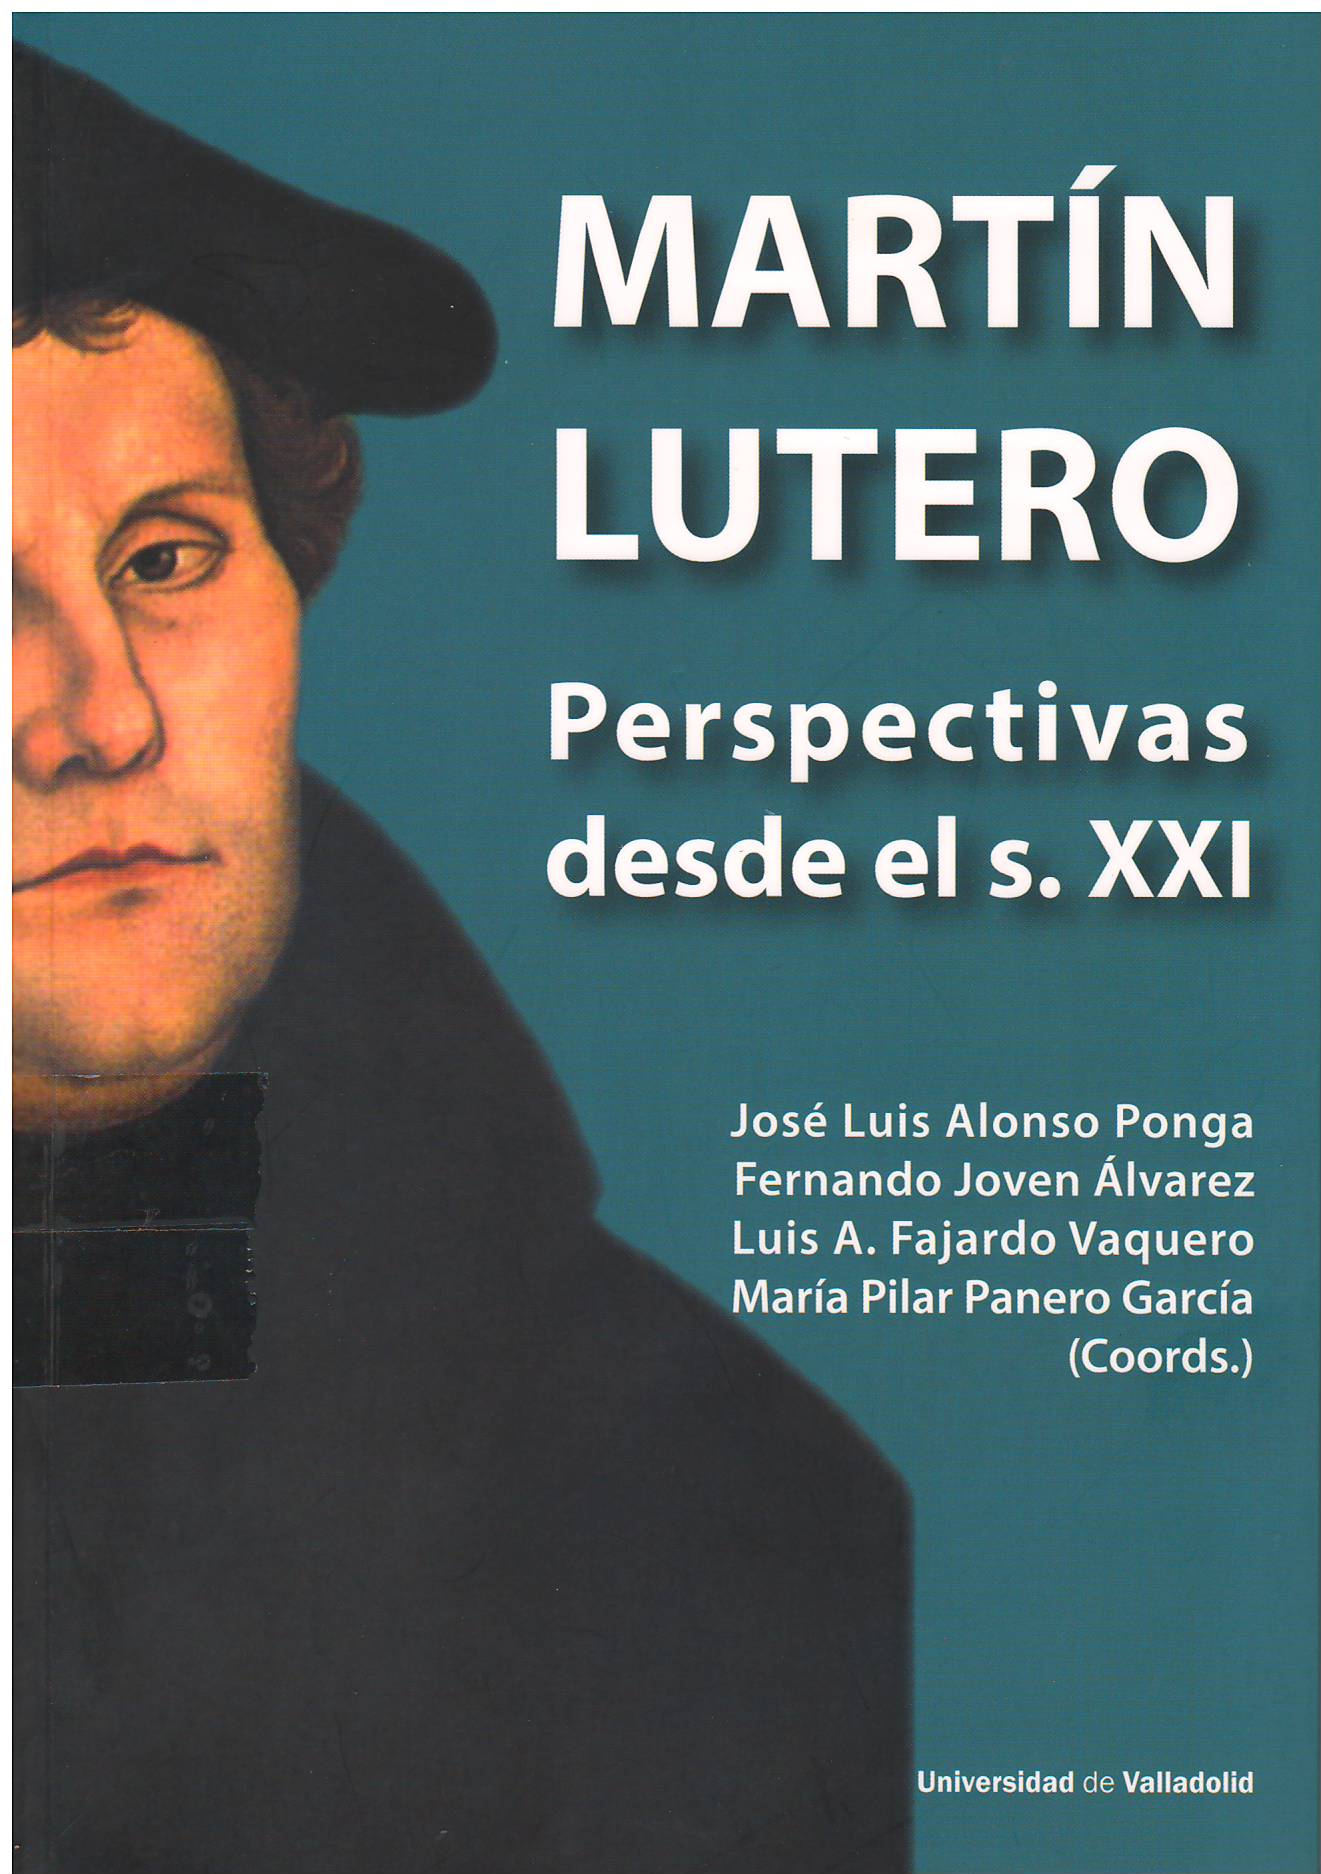 Imagen de portada del libro Martín Lutero